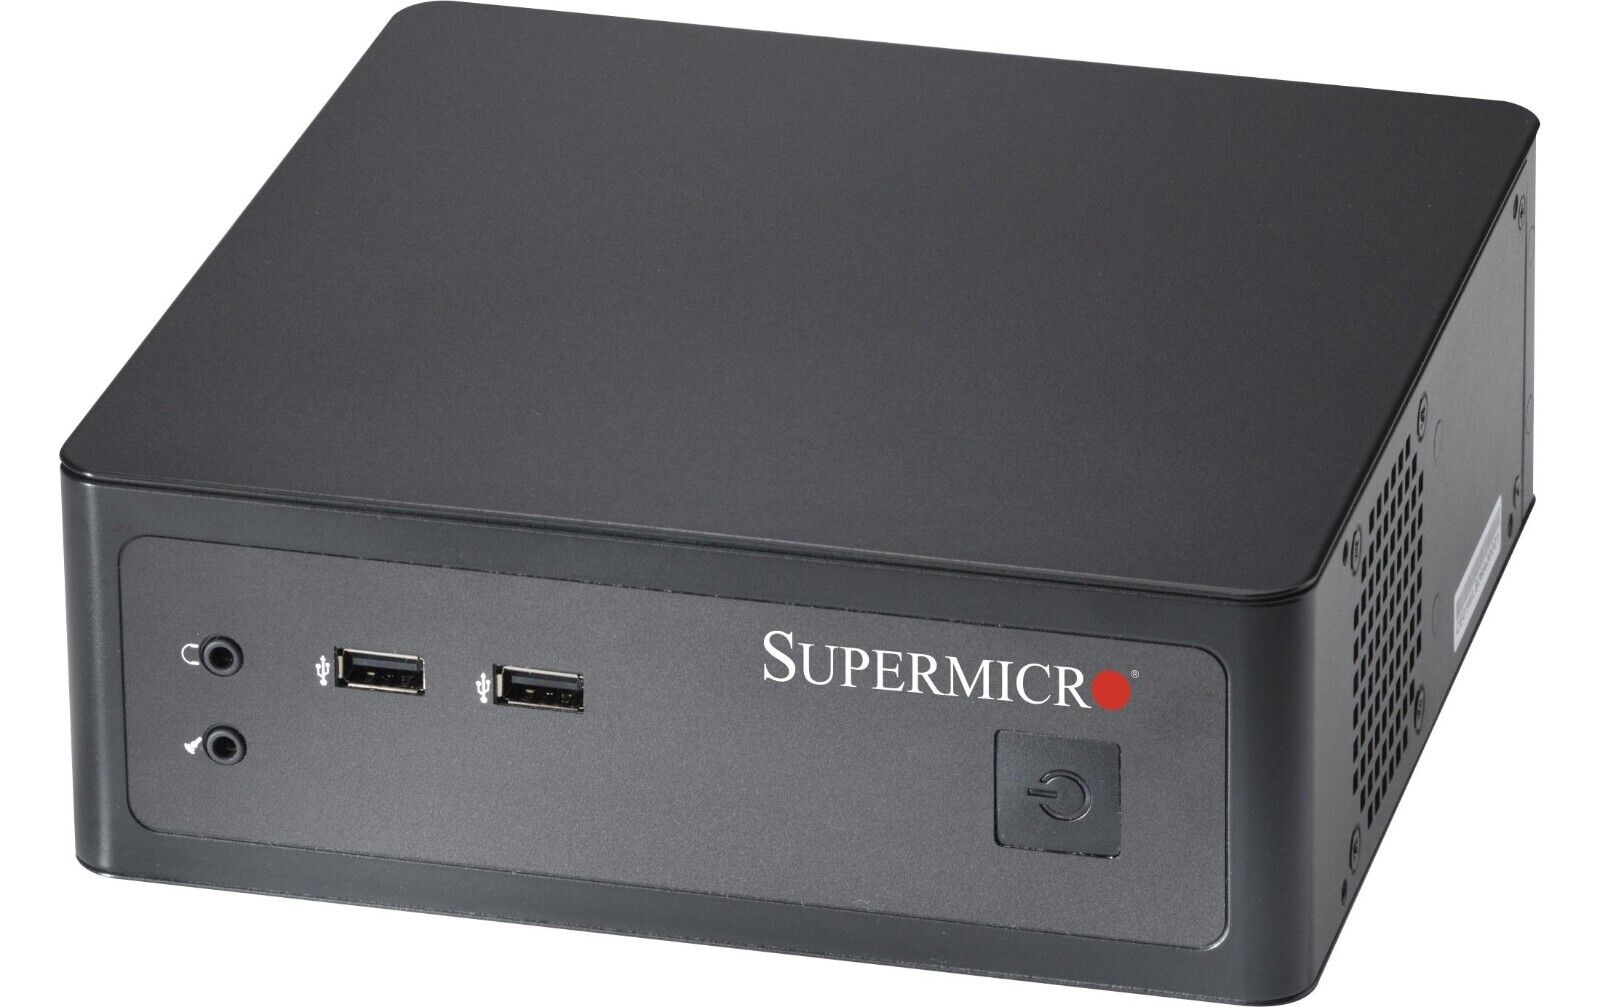 Supermicro SYS-1018L-MP Mini-ITX Barebones Server NEW IN STOCK 5 Yr Warranty